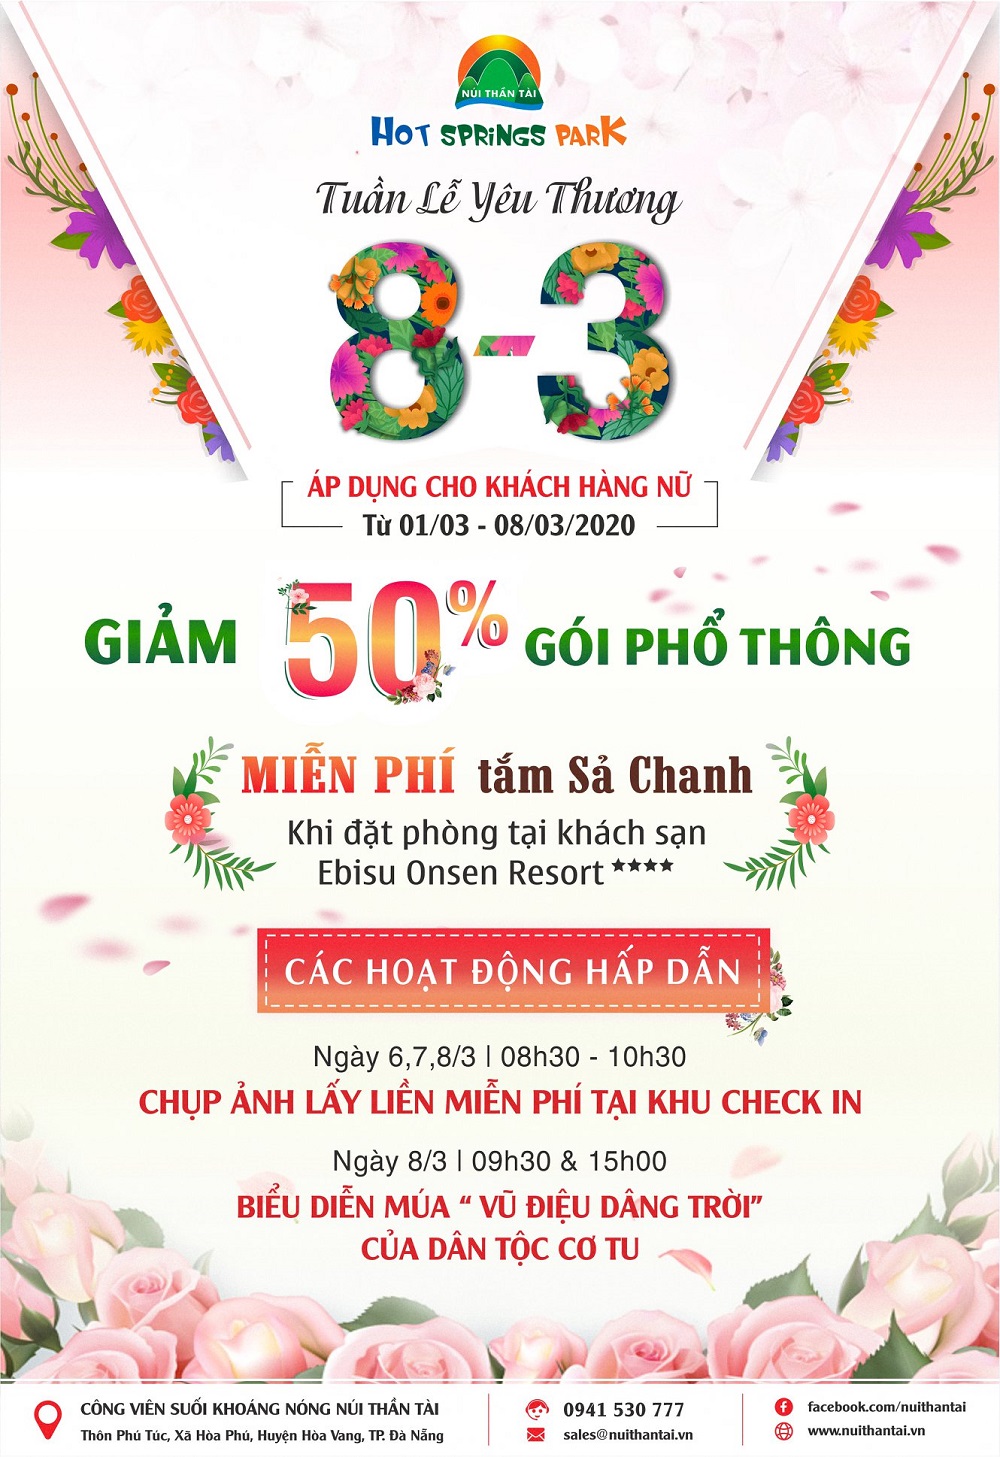 Cong Vien Suoi Khoang Nong Cvskn Nui Than Tai Giam 50 Goi Ve Pho Thong Danh Cho Phu Nu Tu 01 08 03